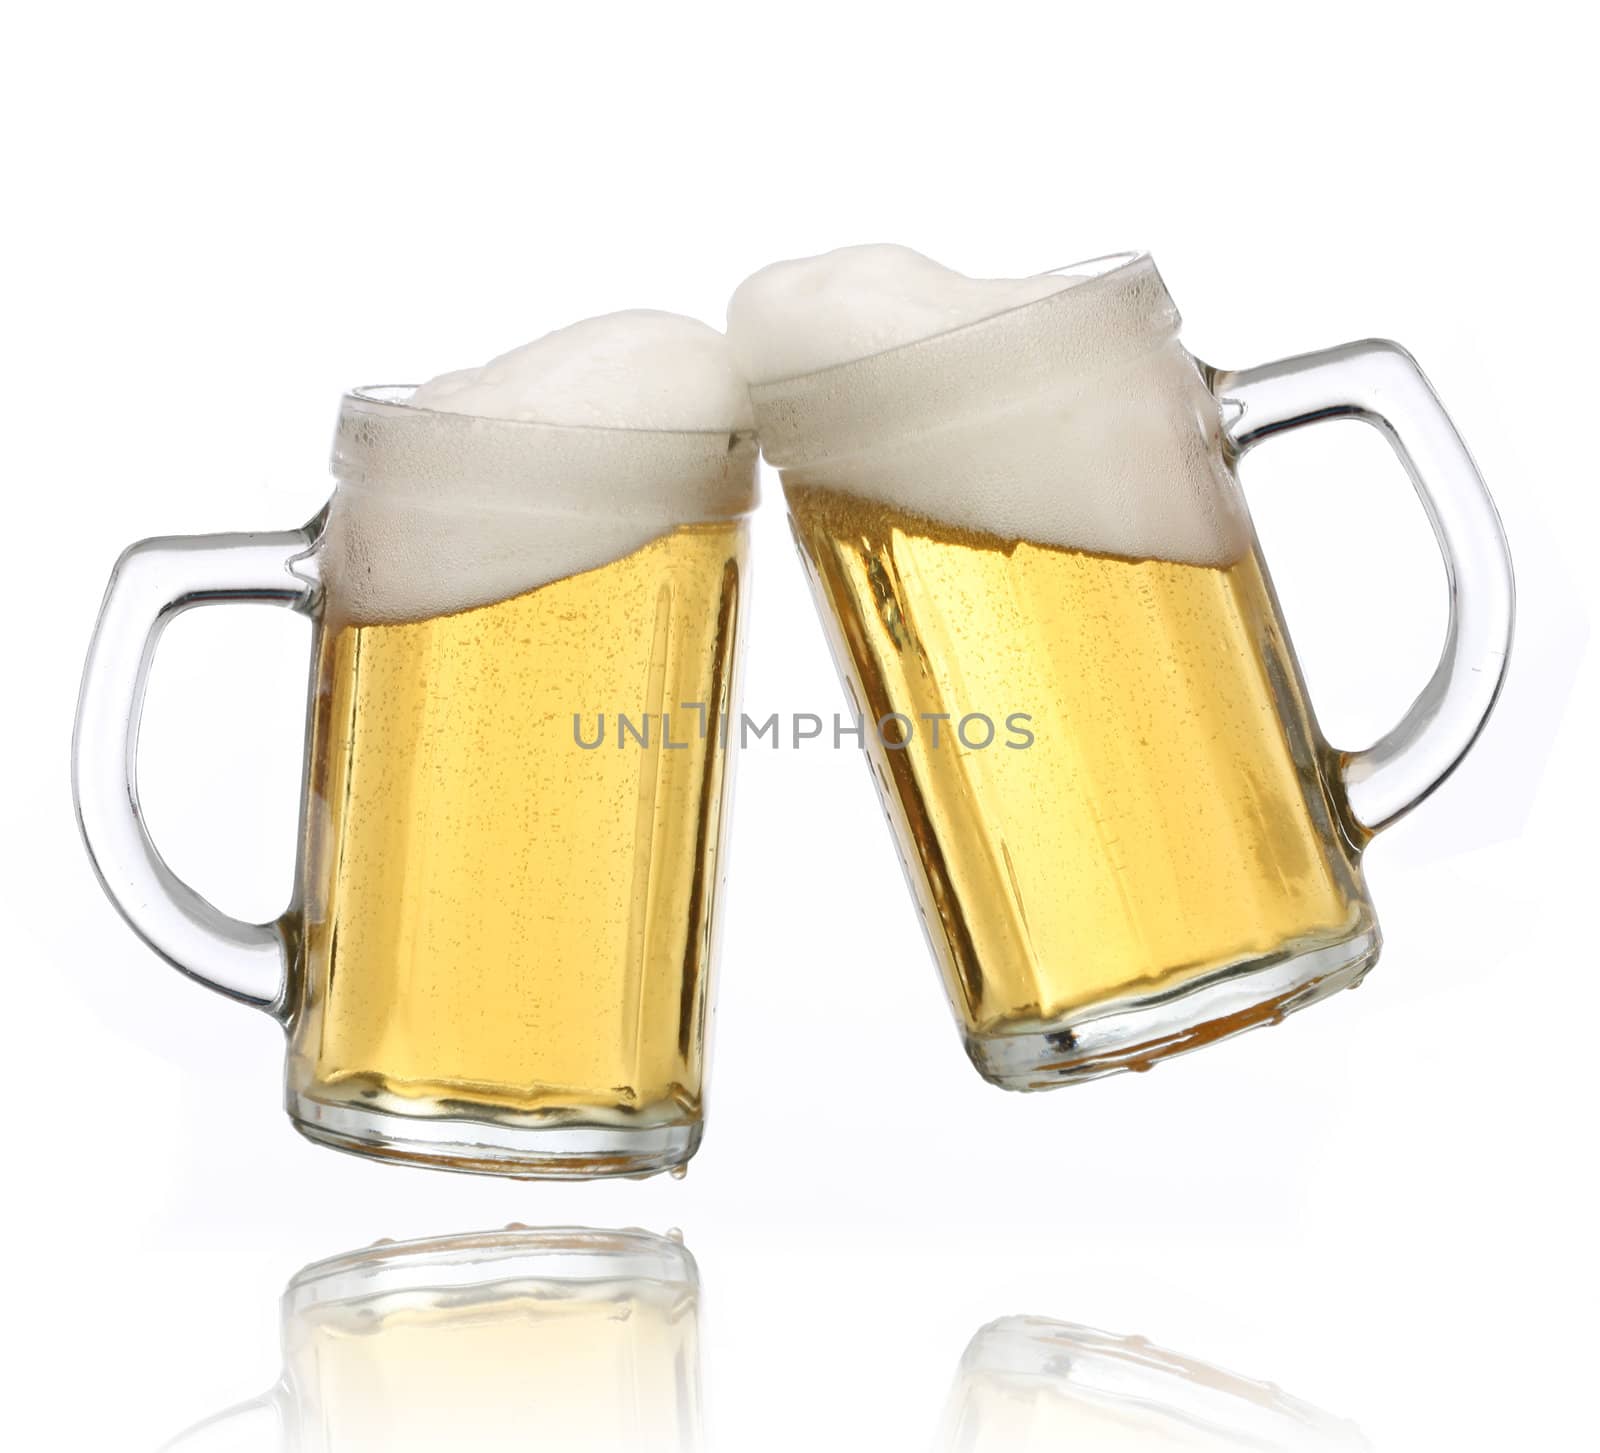 Pair of beer glasses making a toast. Beer splash